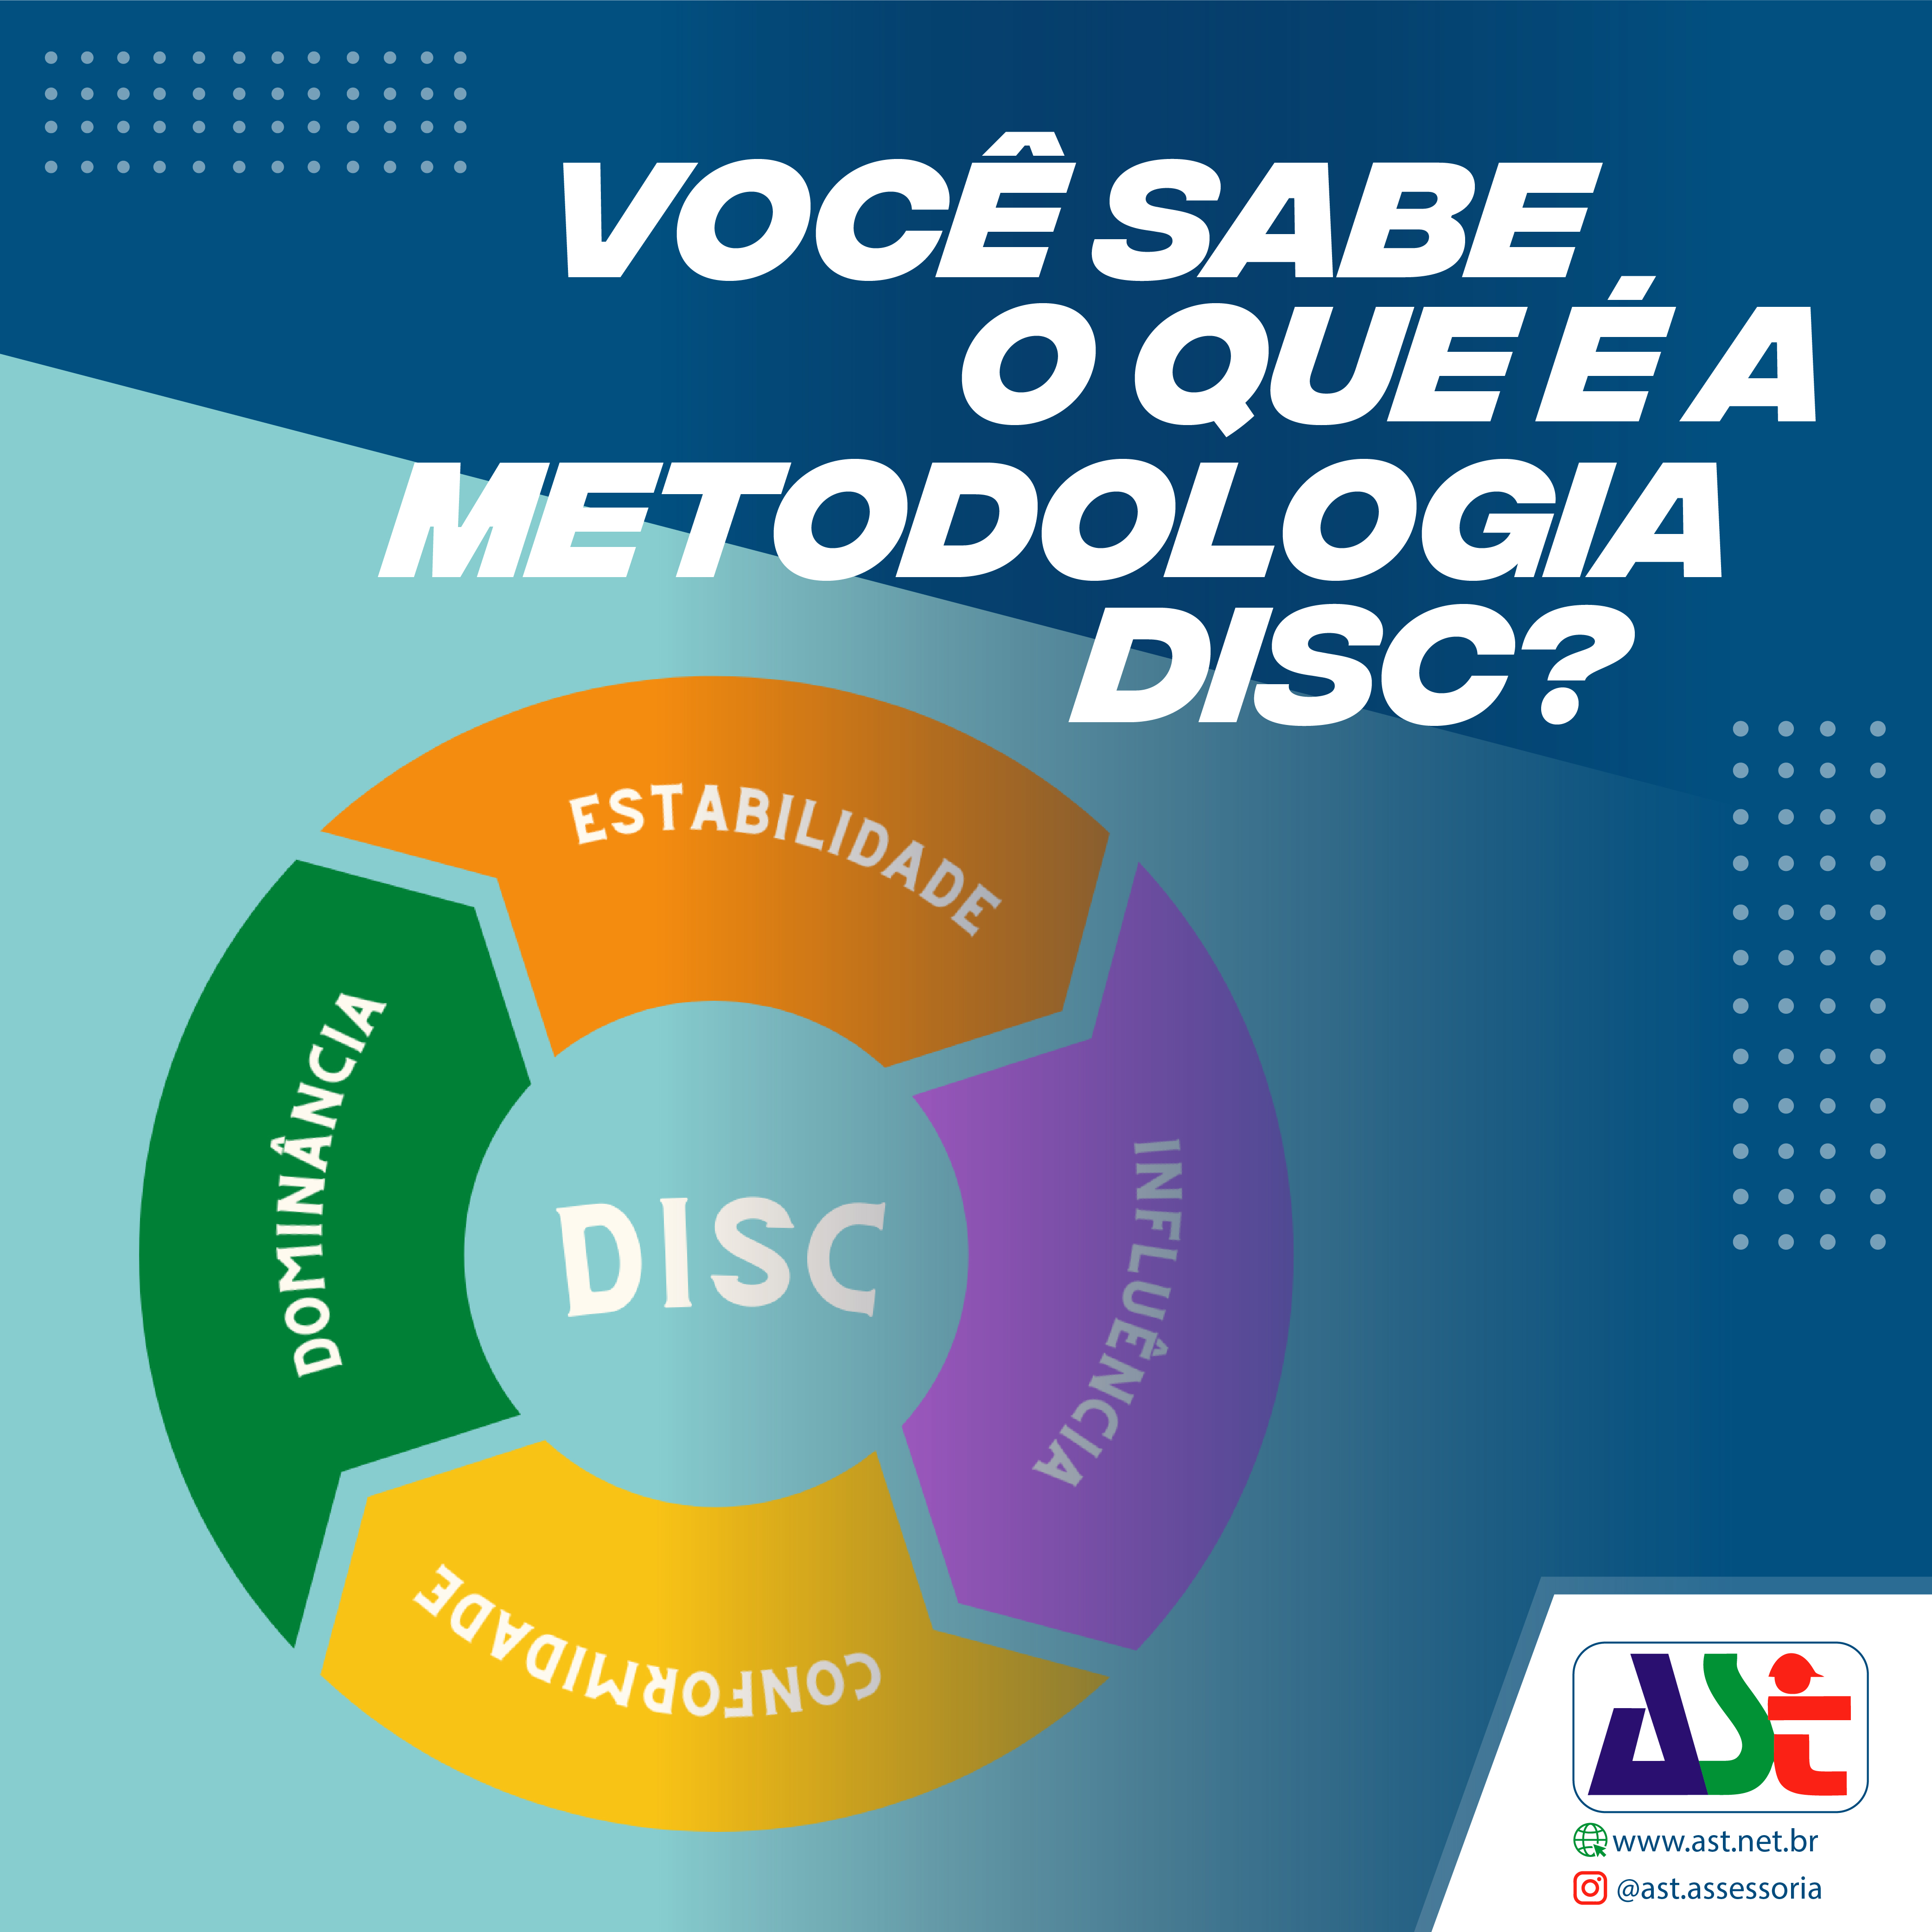 Você sabe o que é a metodologia DISC?